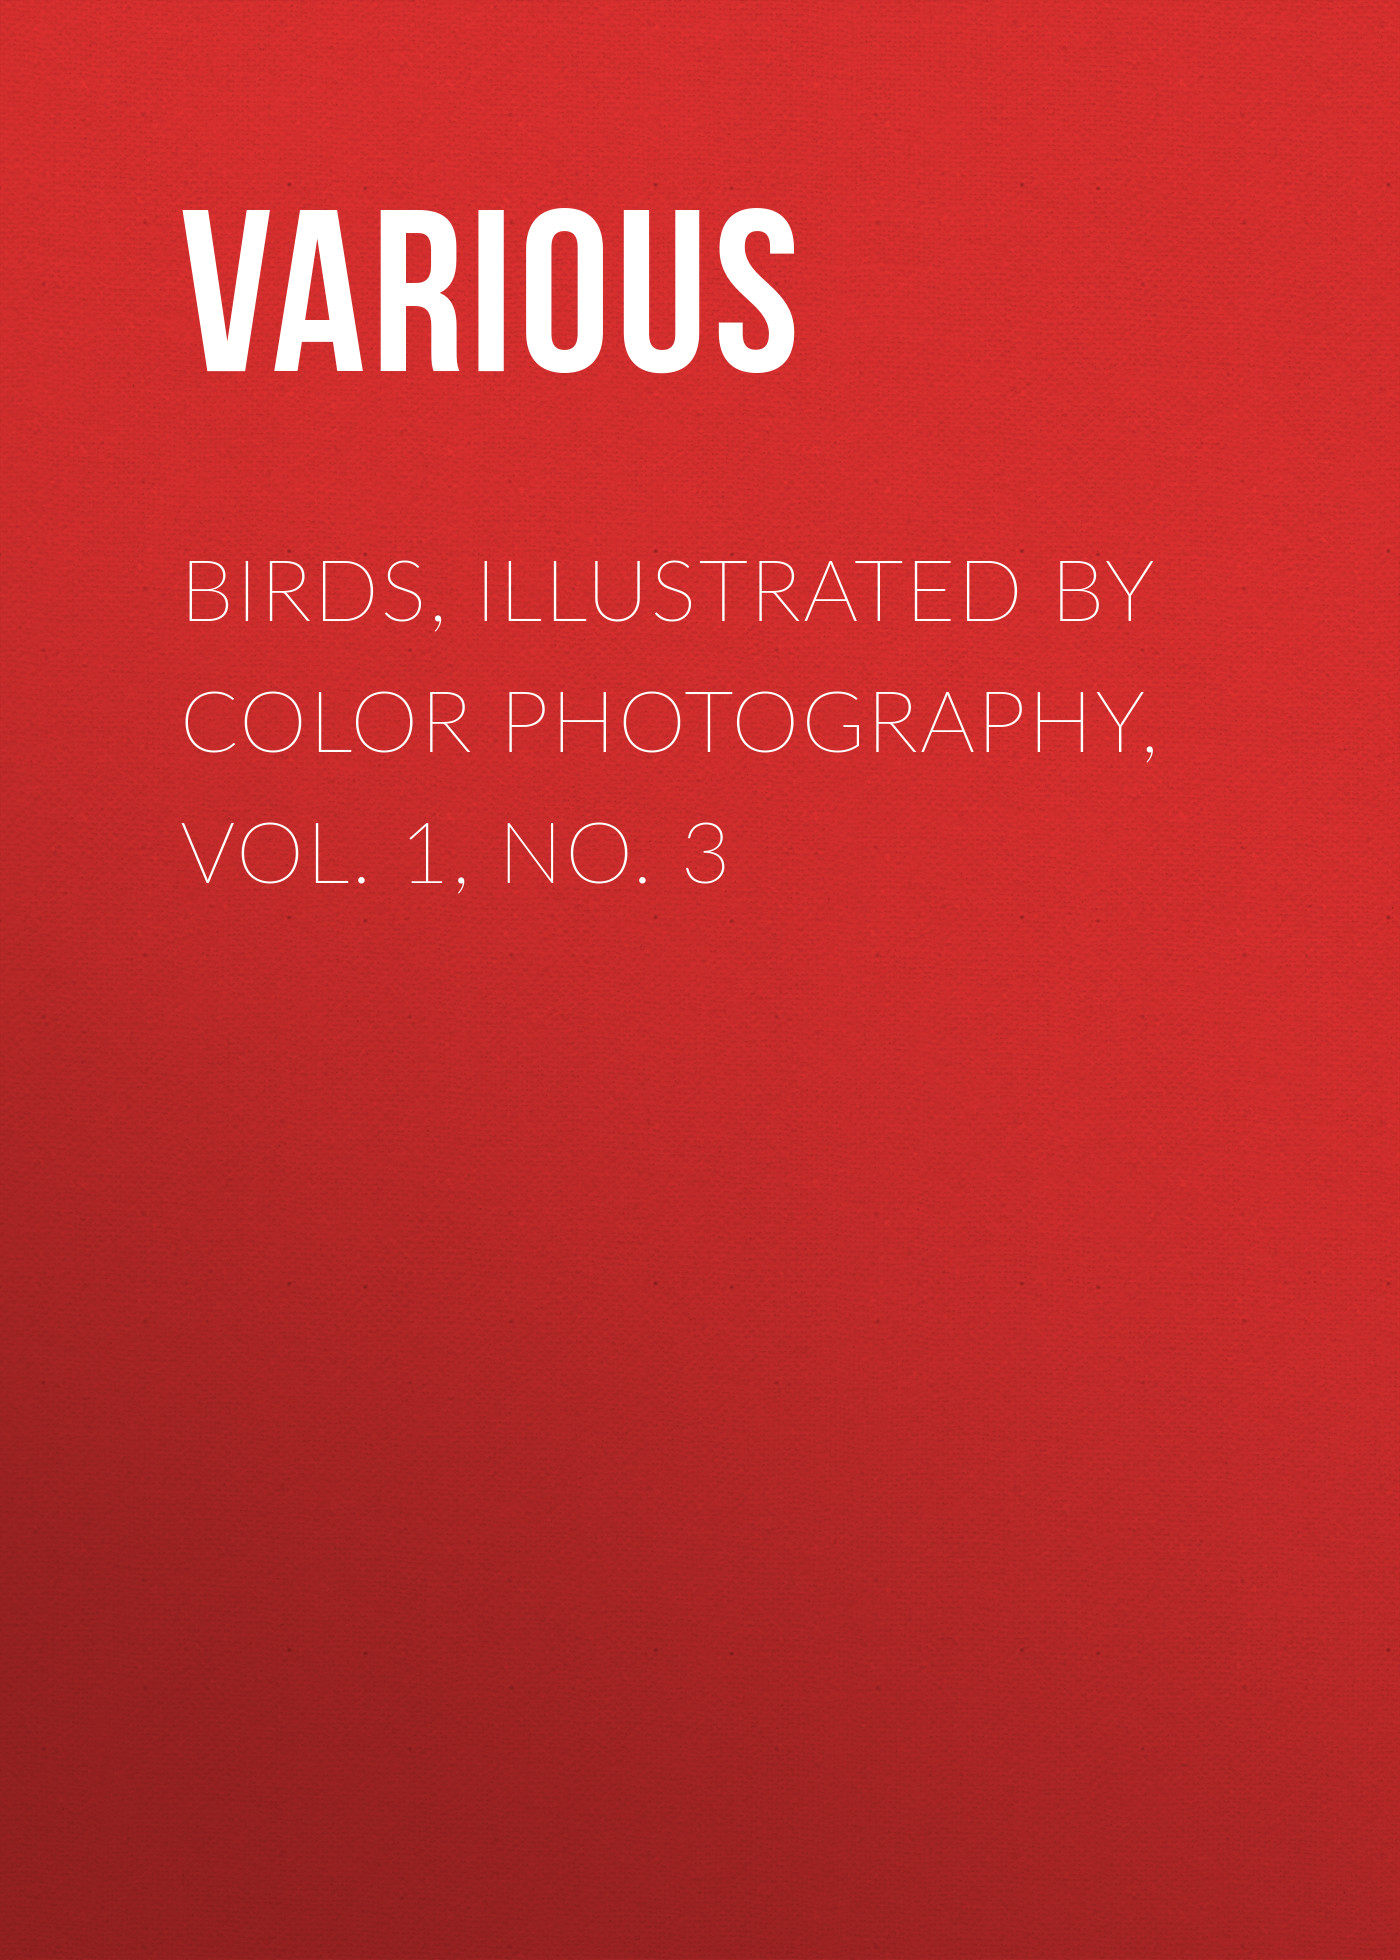 Книга Birds, Illustrated by Color Photography, Vol. 1, No. 3 из серии , созданная  Various, может относится к жанру Журналы, Биология, Природа и животные, Зарубежная образовательная литература. Стоимость электронной книги Birds, Illustrated by Color Photography, Vol. 1, No. 3 с идентификатором 25569295 составляет 0 руб.